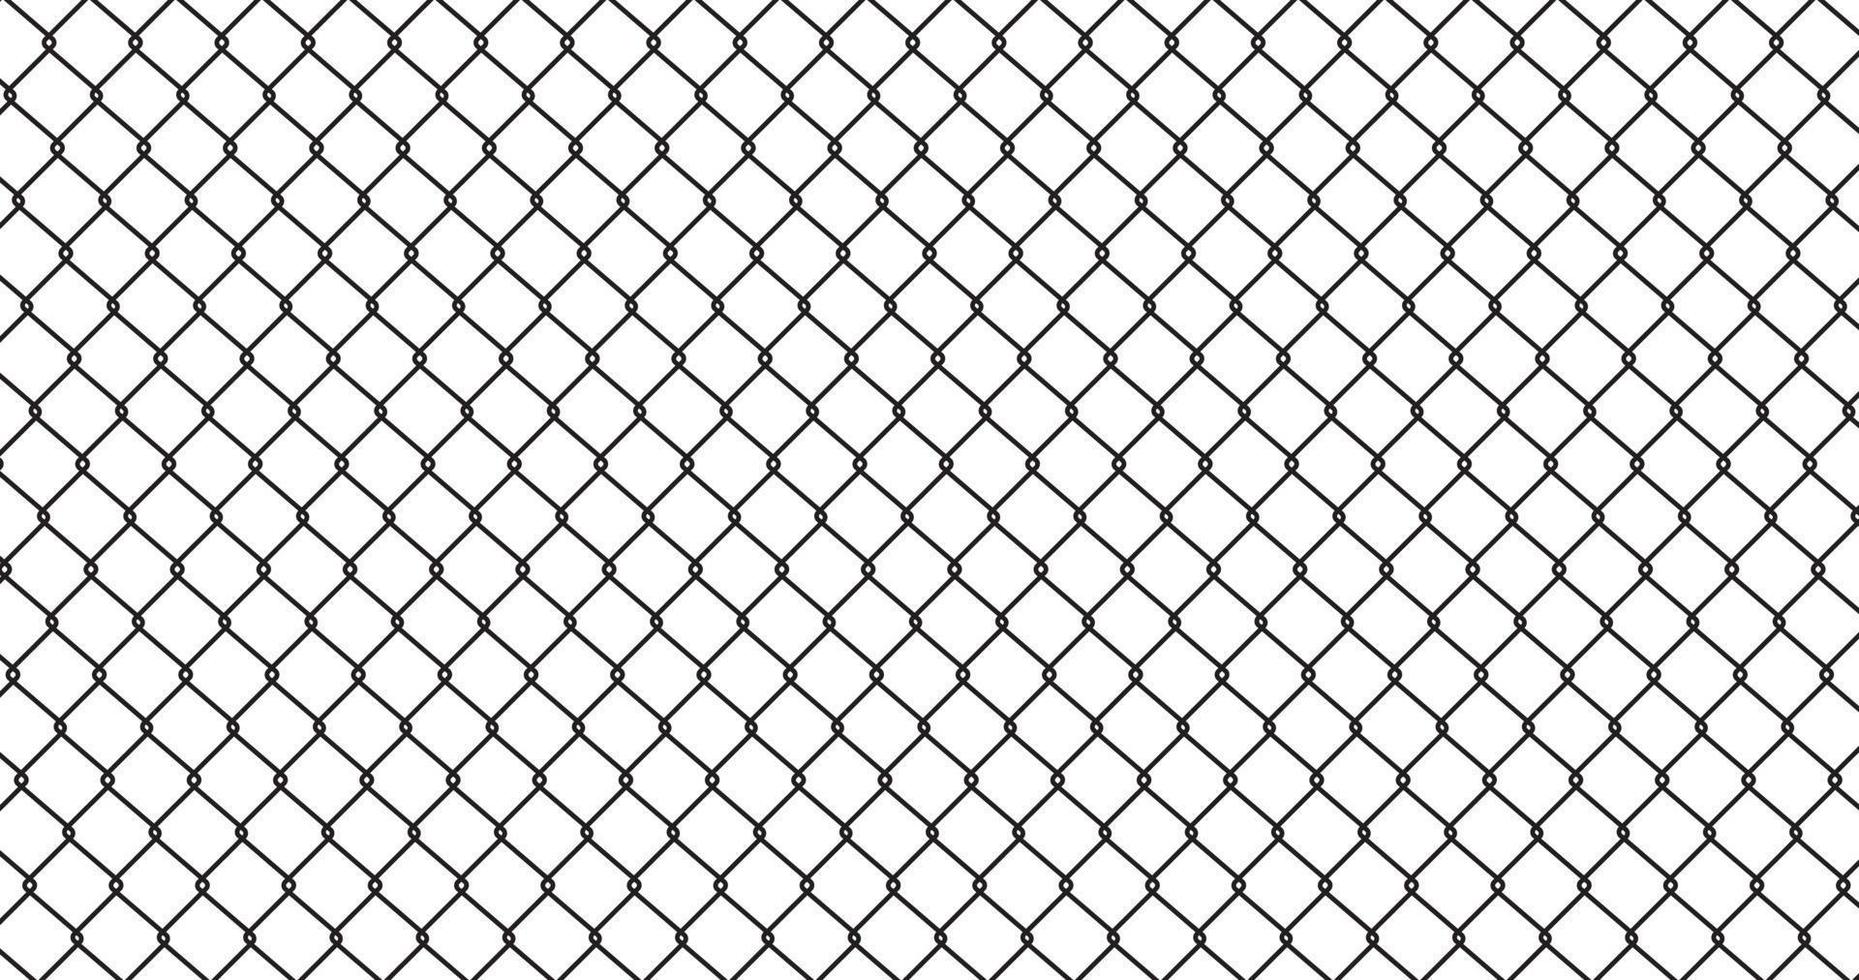 grille de lignes abstraites fond de texture transparente de treillis métallique, clôture de barrière de prison, propriété sécurisée, treillis métallique de clôture à maillons de chaîne. conception plate d'illustration vectorielle. isolé sur fond blanc. vecteur